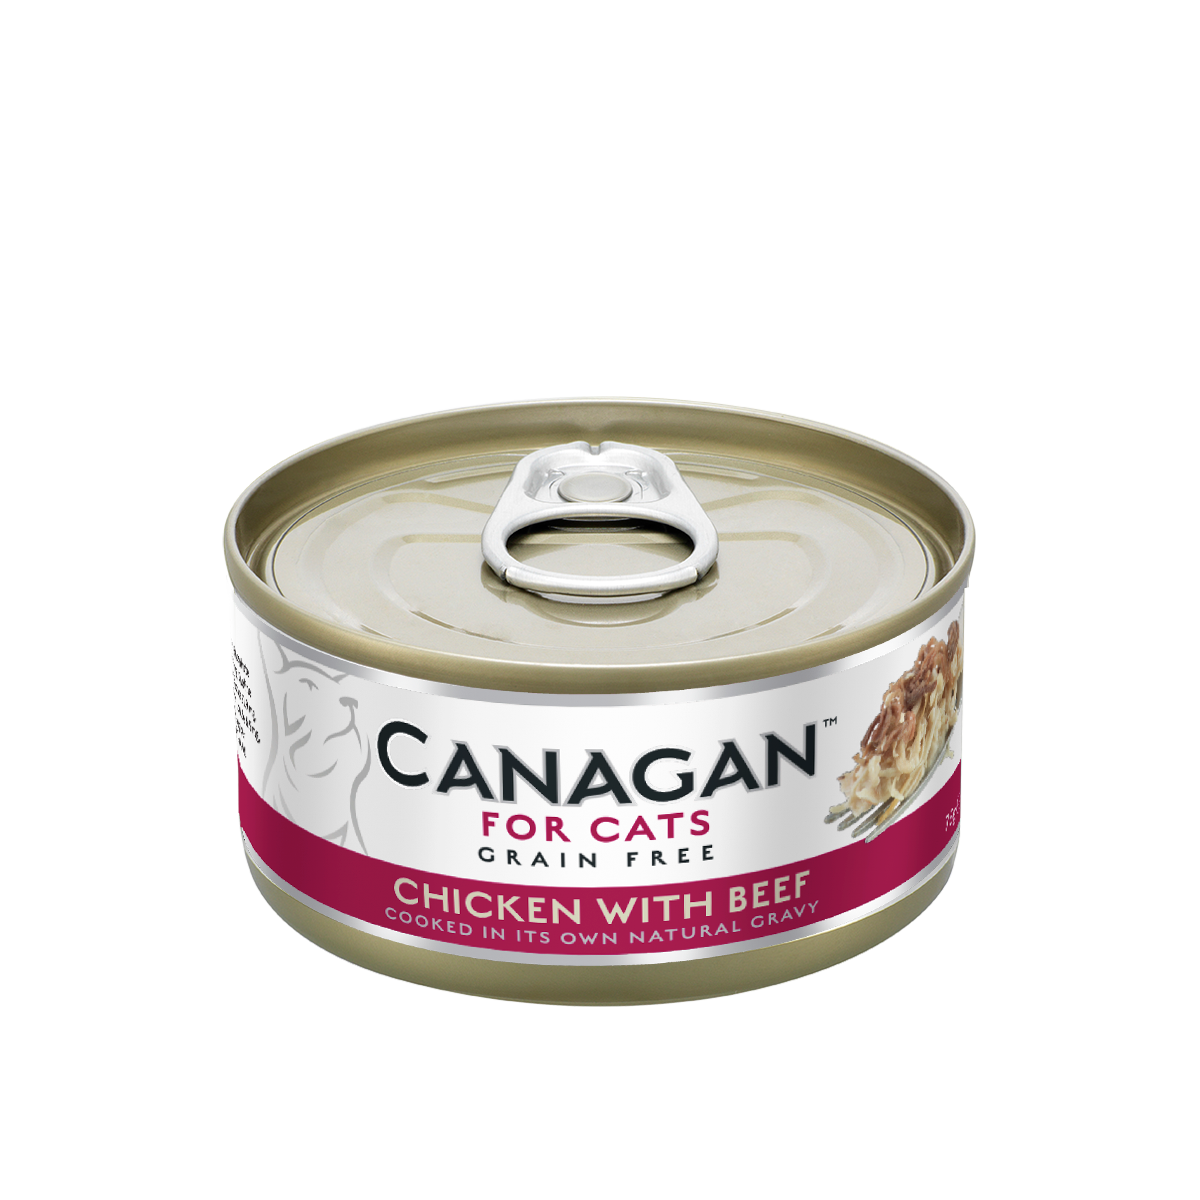 Canagan貓罐頭 - 雞肉伴牛肉配方